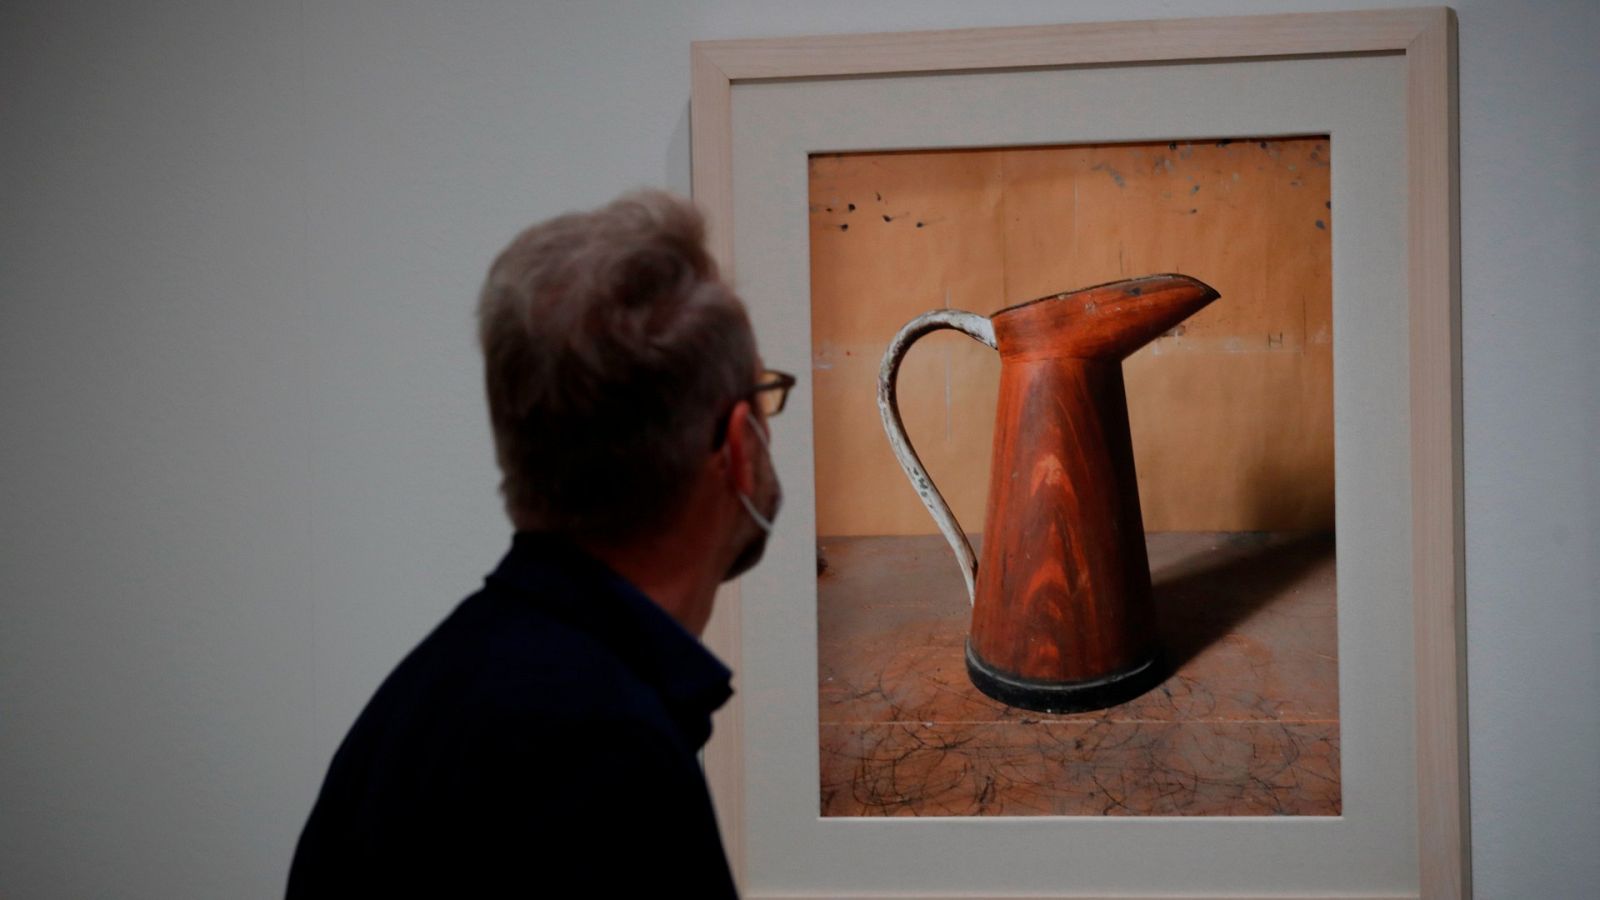 La 'Resonancia infinita' del pintor Giorgio Morandi